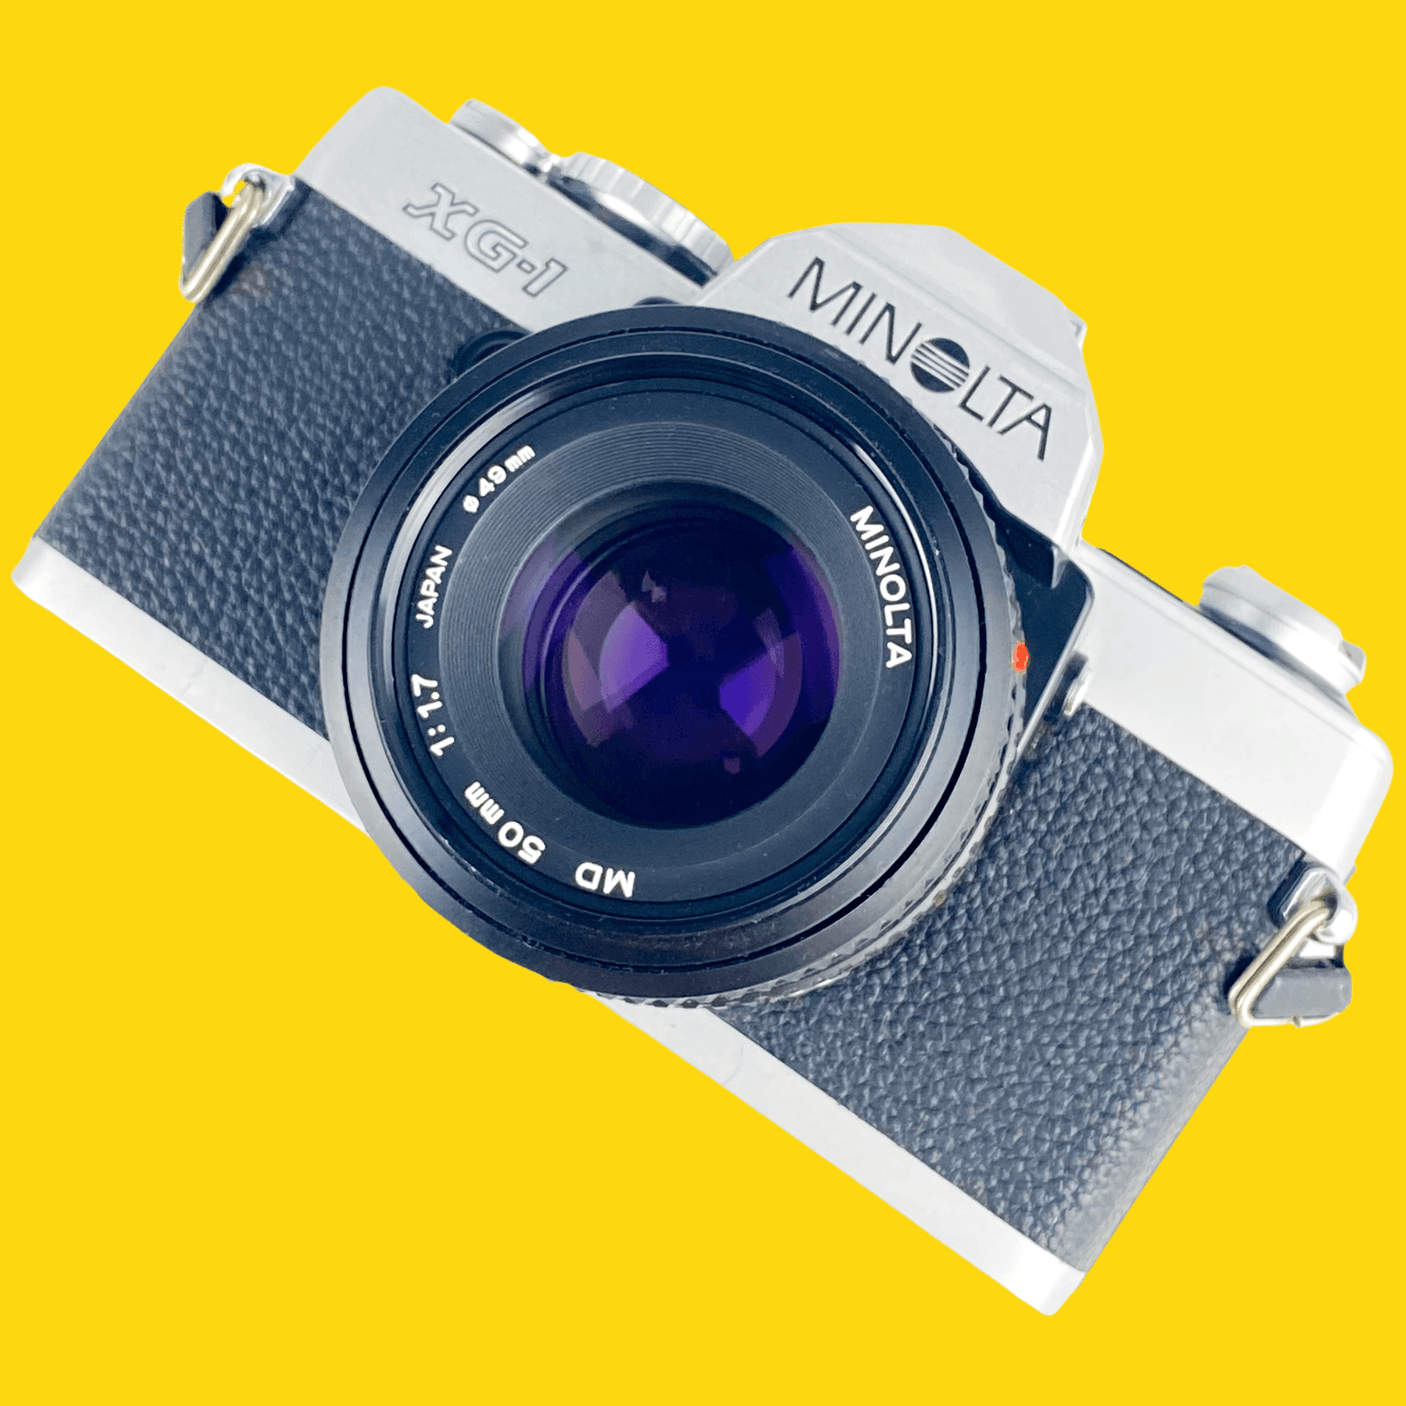 Minolta XG-1 SLR 35mm Film Camera with 50mm lens